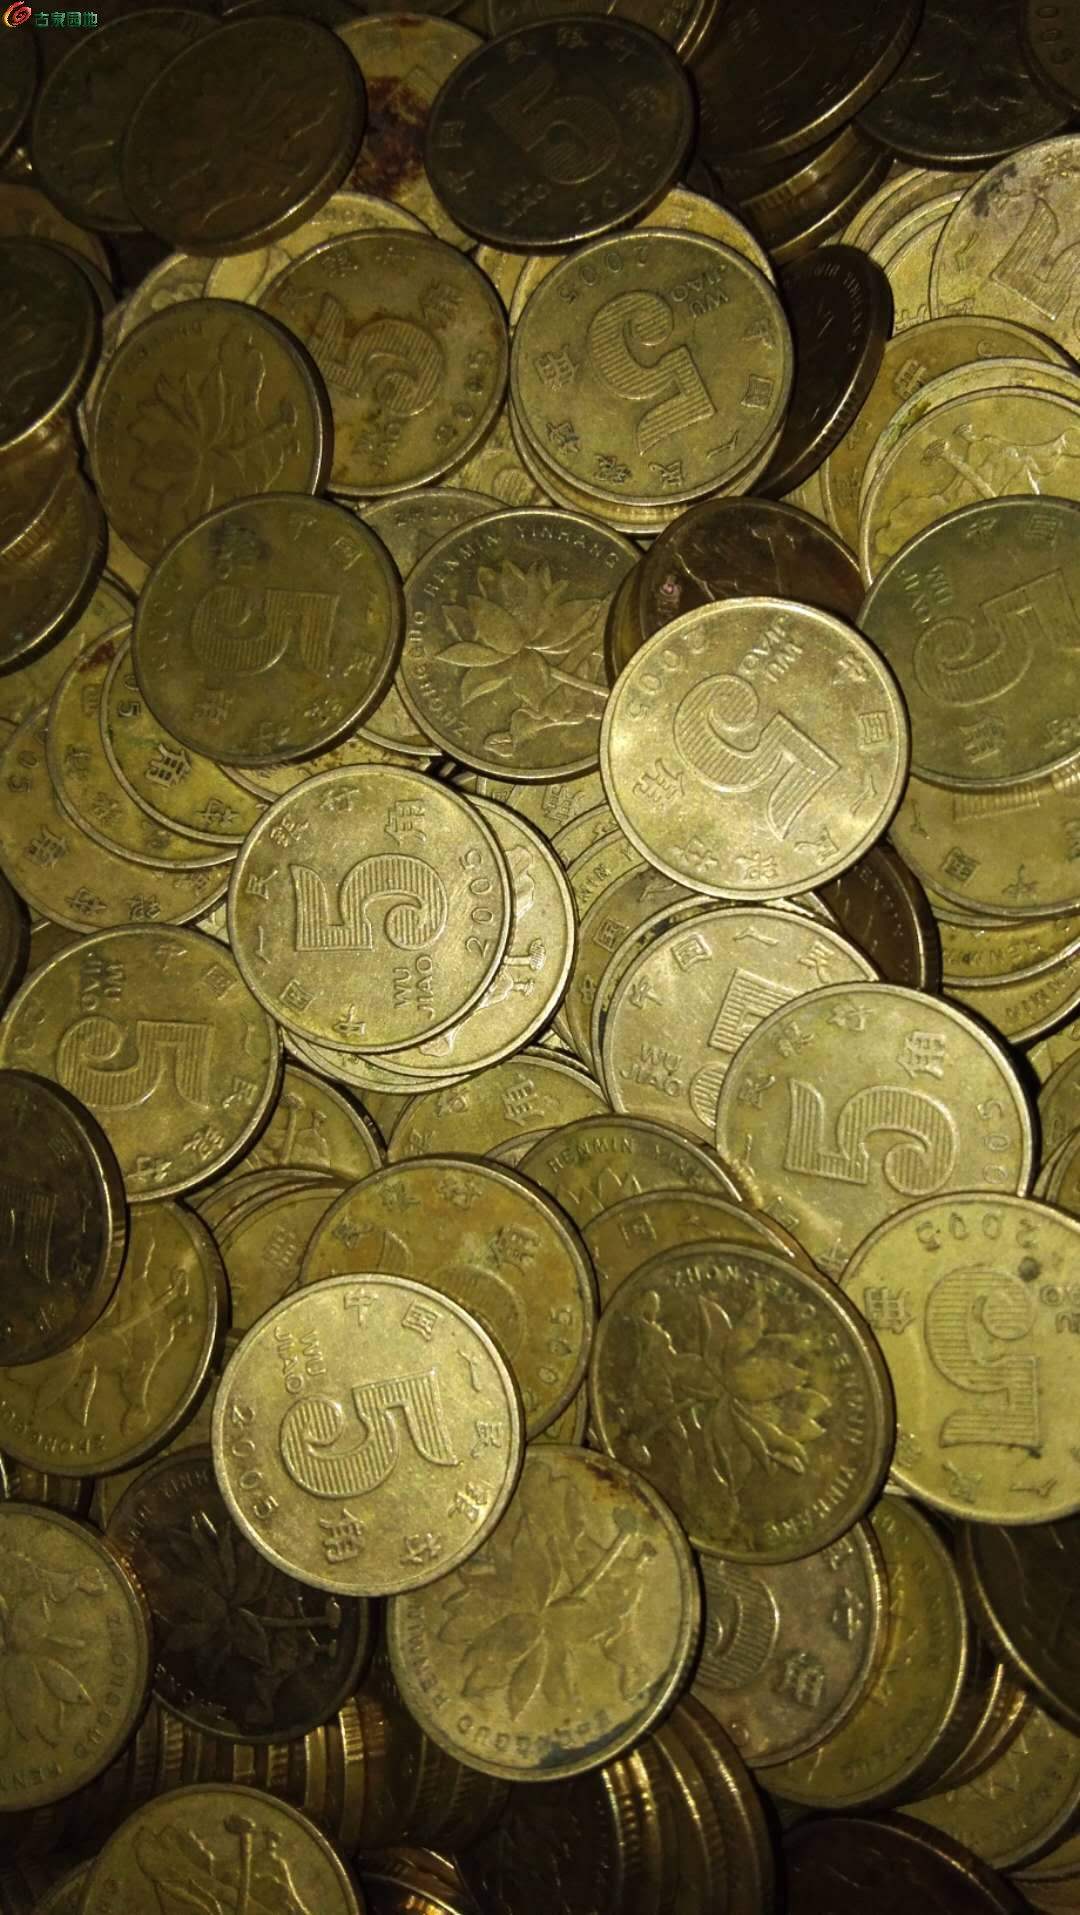 澳门硬币图片及价格表-图库-五毛网